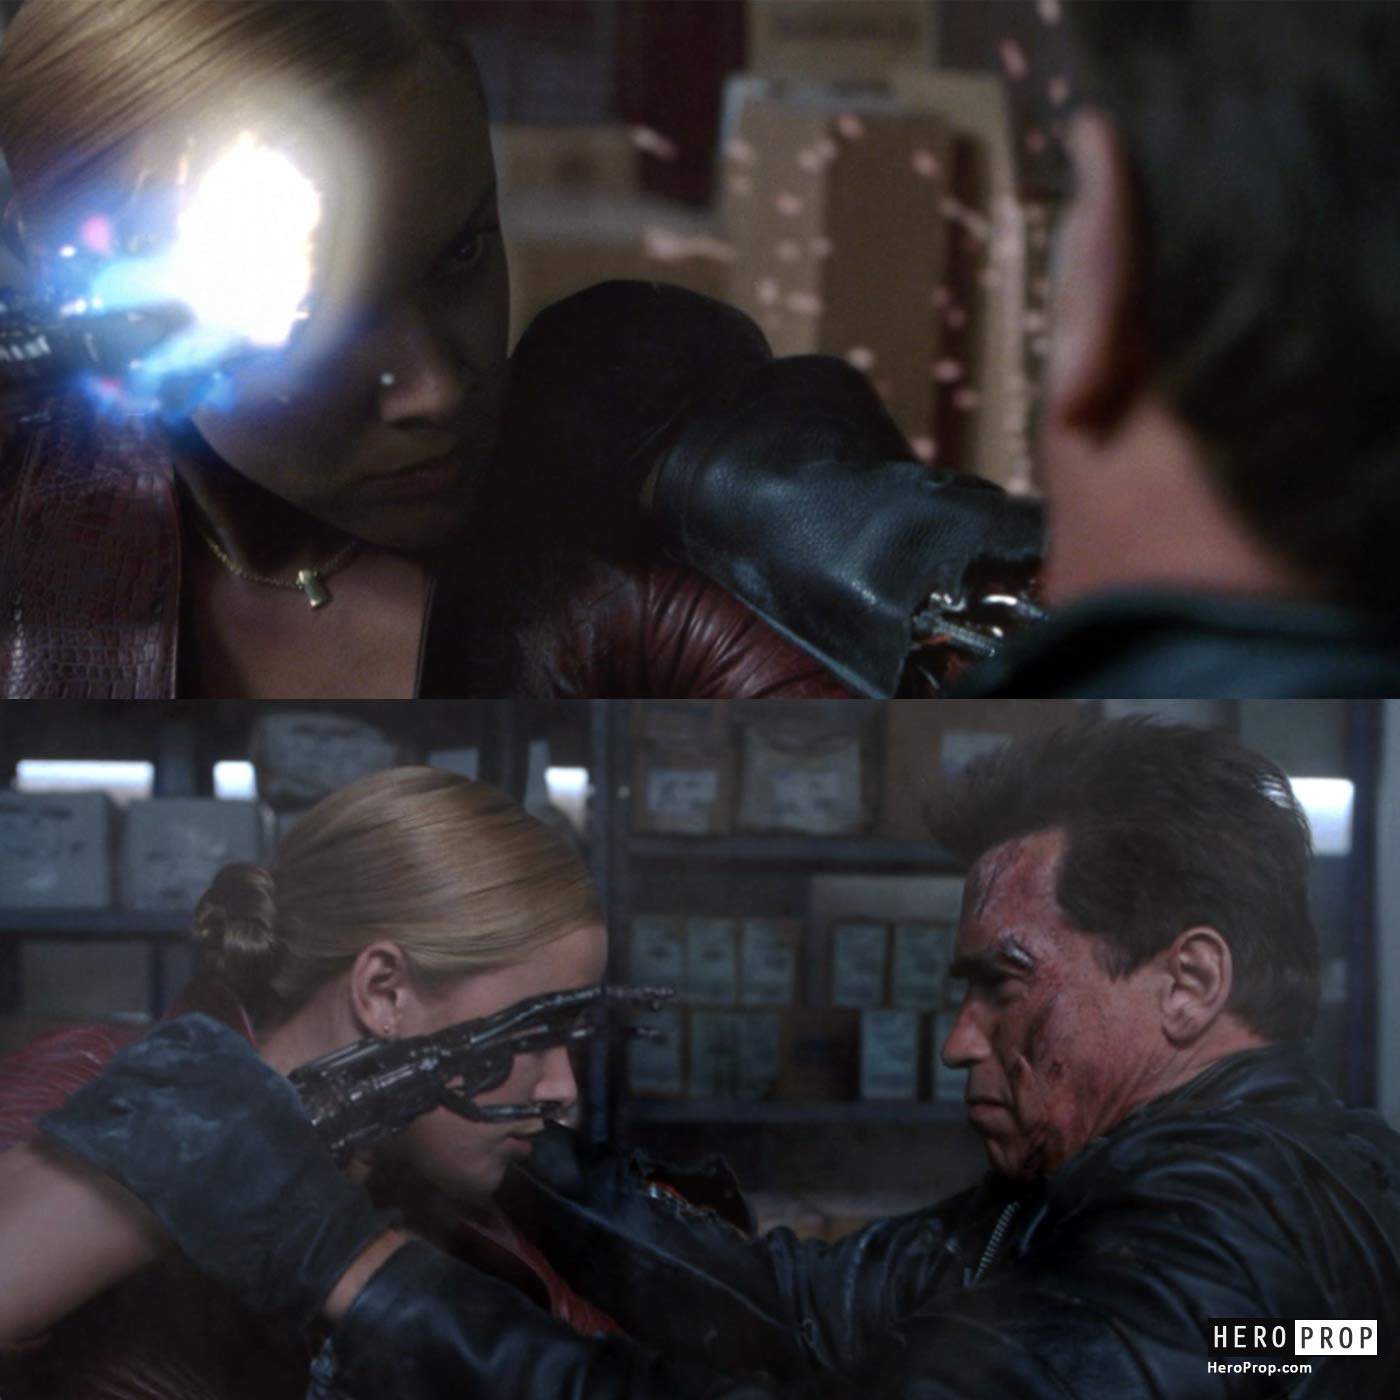 https://heroprop.com/wp-content/uploads/2022/11/Terminator-Arnold-Schwarzenegger-Movie-Prop-Arm-and-Glove.jpg